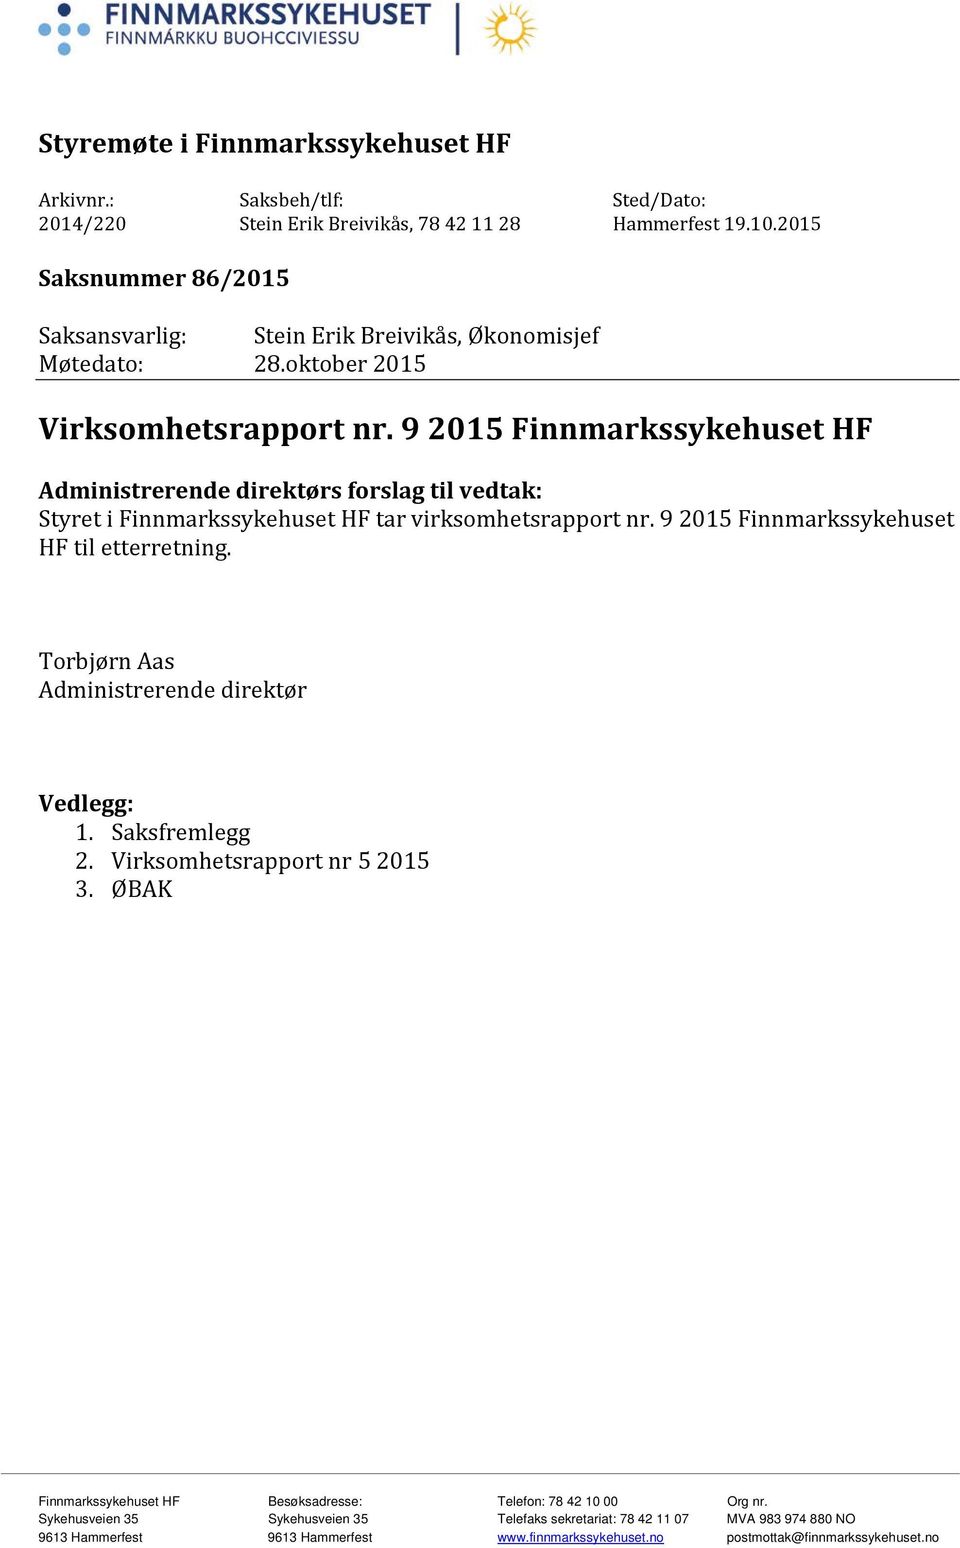 9 2015 Finnmarkssykehuset HF Administrerende direktørs forslag til vedtak: Styret i Finnmarkssykehuset HF tar virksomhetsrapport nr. 9 2015 Finnmarkssykehuset HF til etterretning.